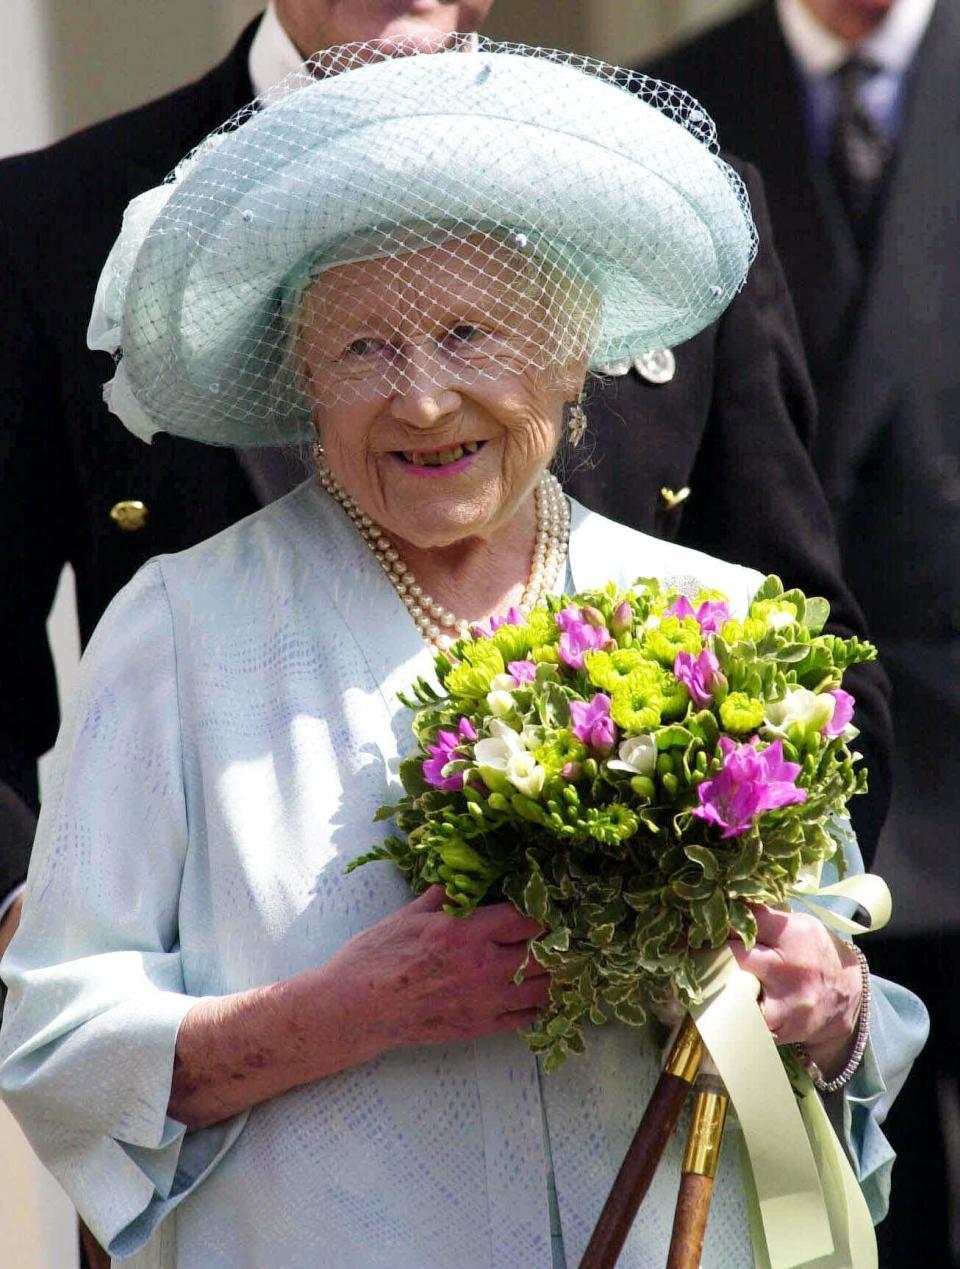 ARCHIVO - En esta foto del 4 de agosto de 2000, la reina Isabel de Gran Bretaña, la Reina Madre, durante las celebraciones por su 100 cumpleaños en Londres. (Rebecca Naden/pool via AP, Archivo)